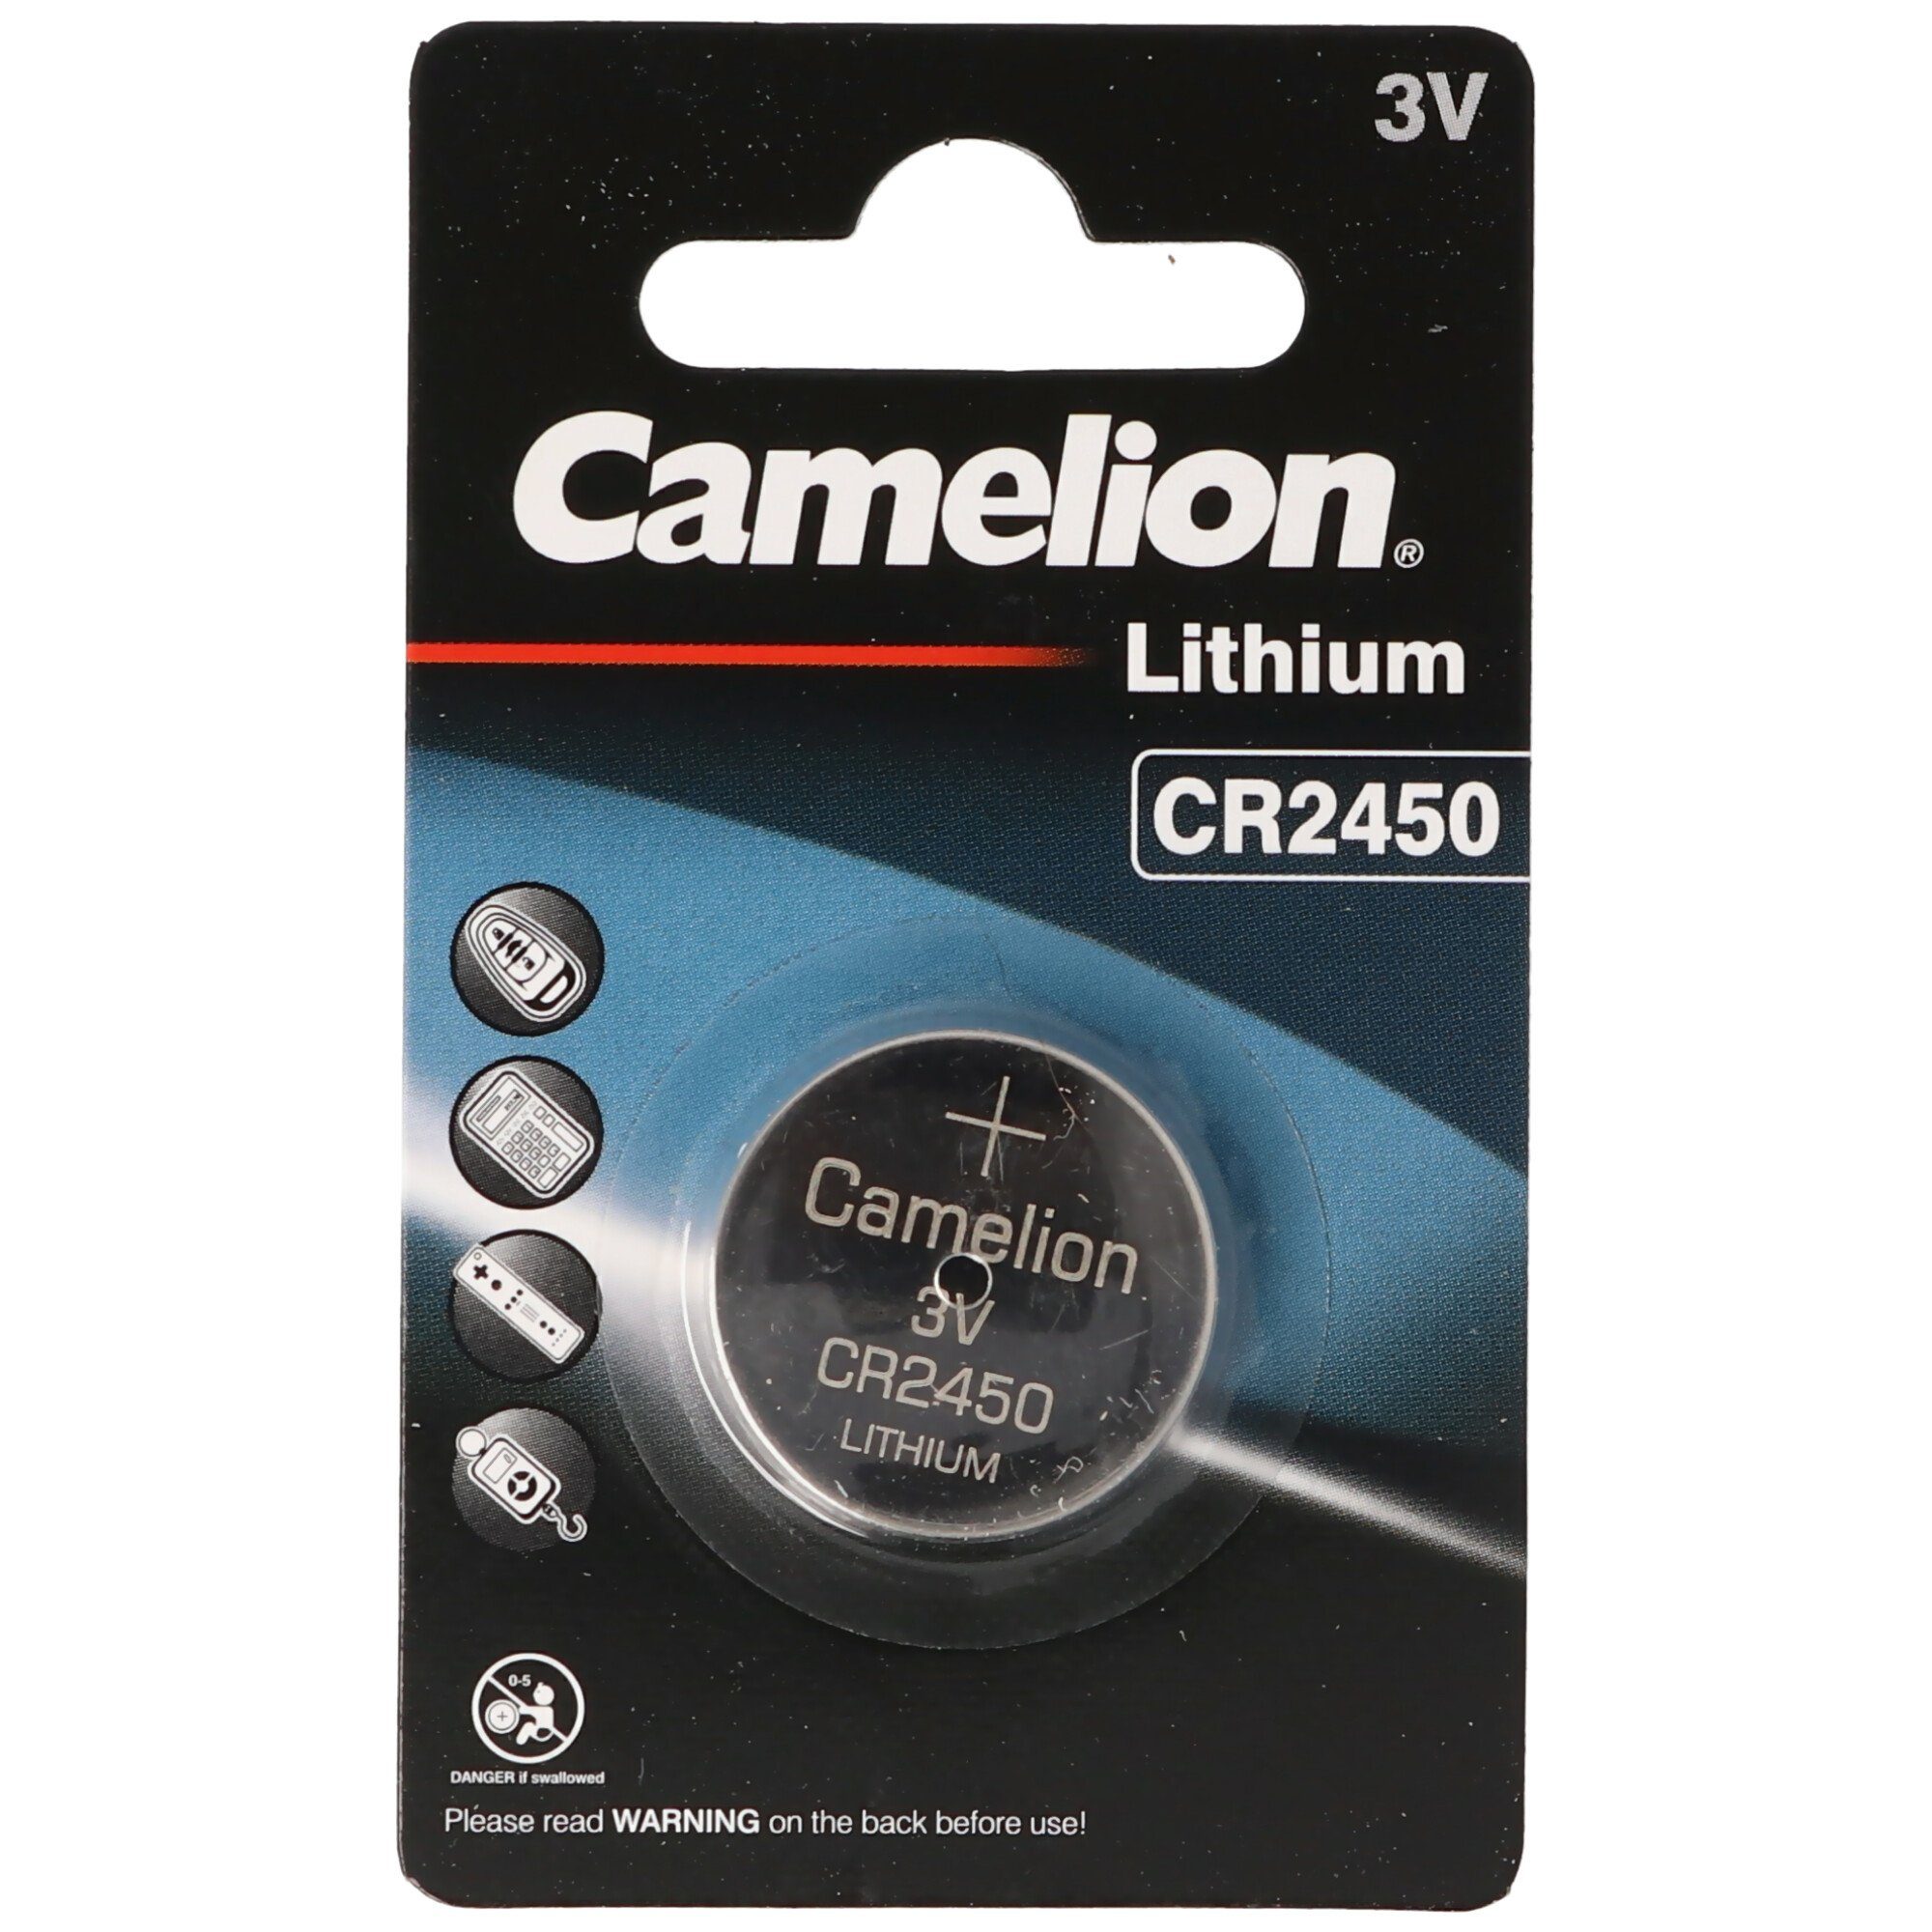 CR2450 (3,0 Batterie, CR2450 Batterie Batterie Camelion V) IEC Lithium Lithium Knopfzelle